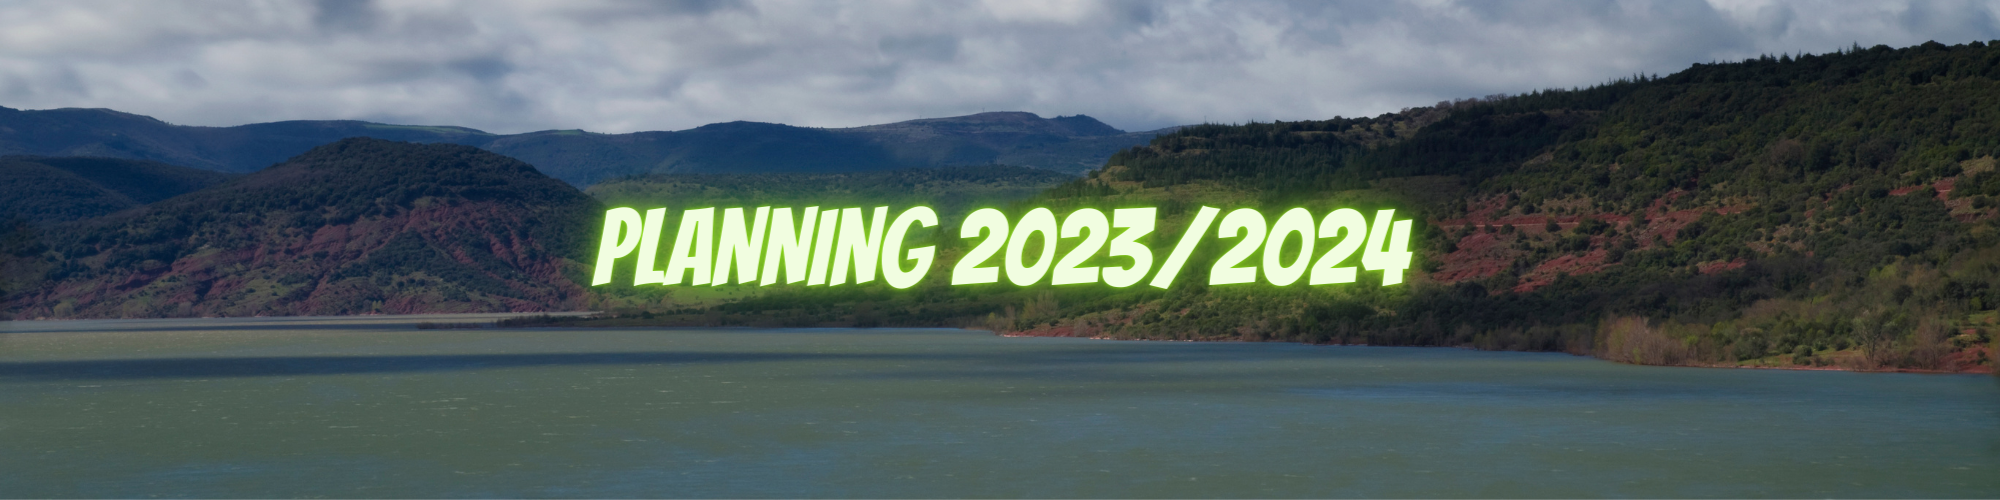 PLANNING 2023-2024